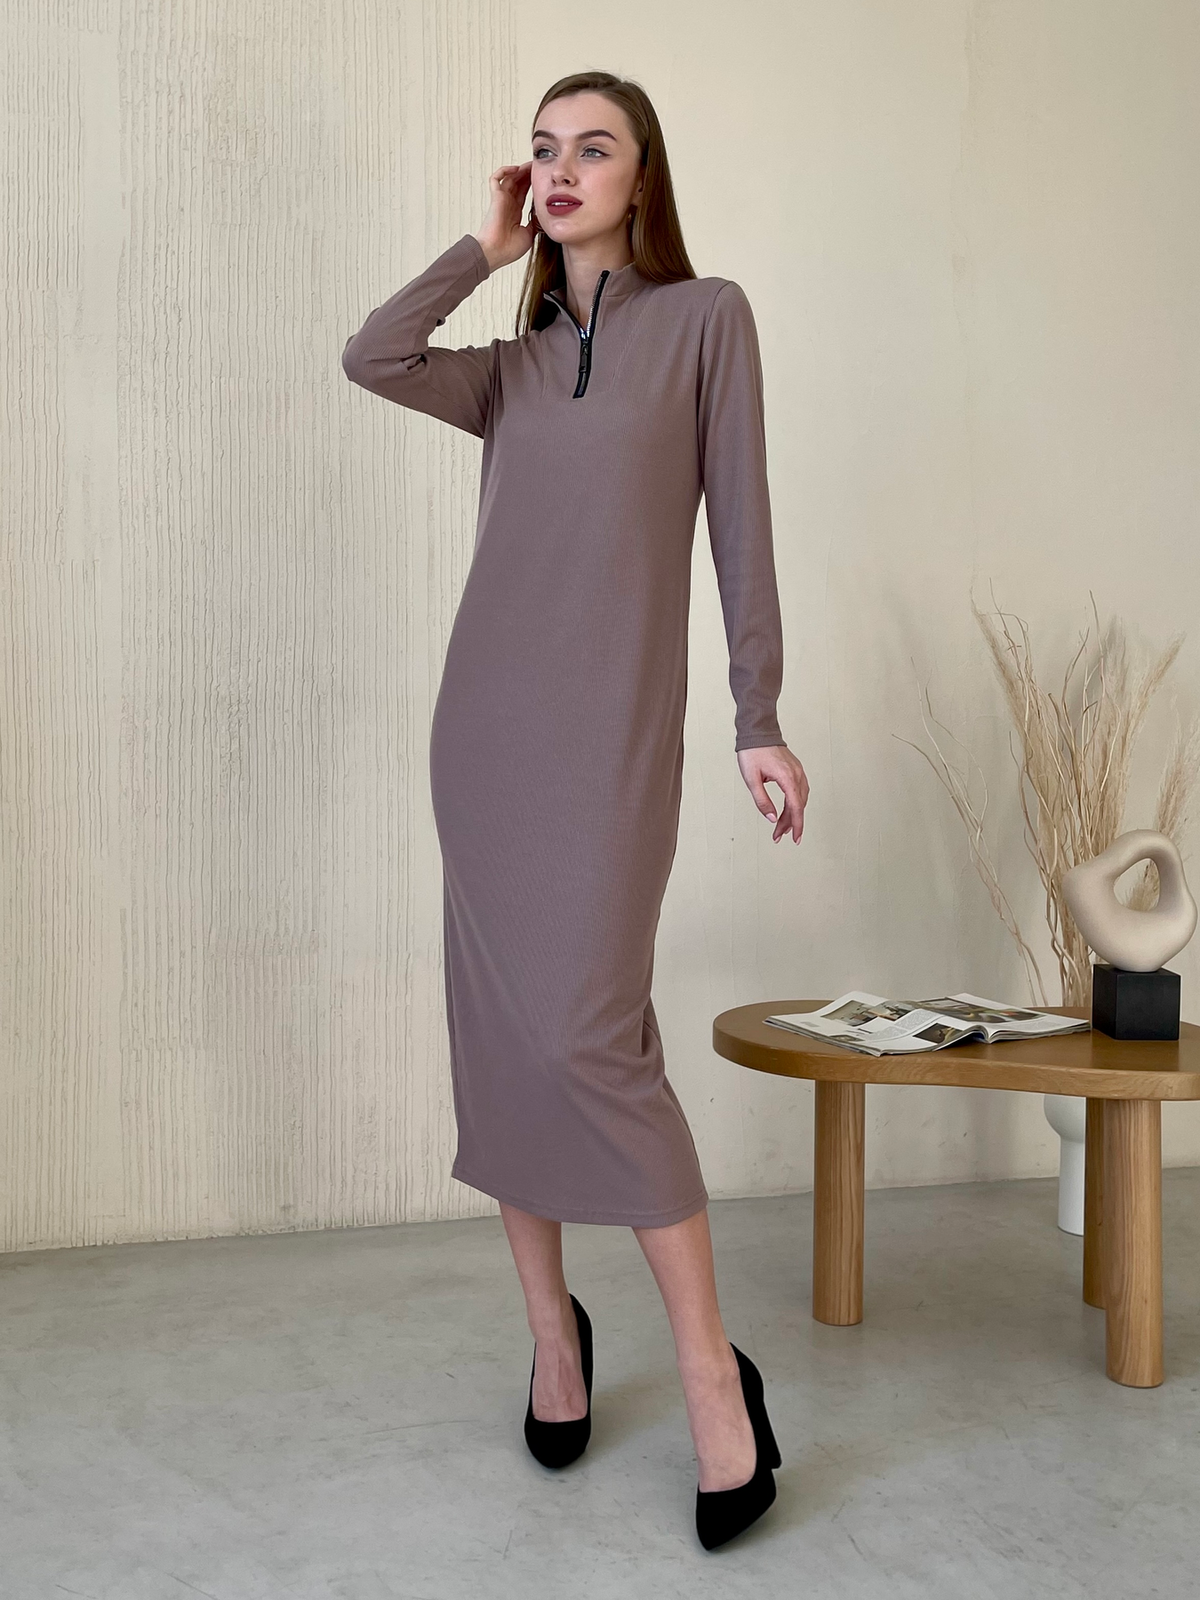 Купить Длинное бежевое платье в рубчик с длинным рукавом Merlini Венето 700001144, размер 42-44 (S-M) в интернет-магазине